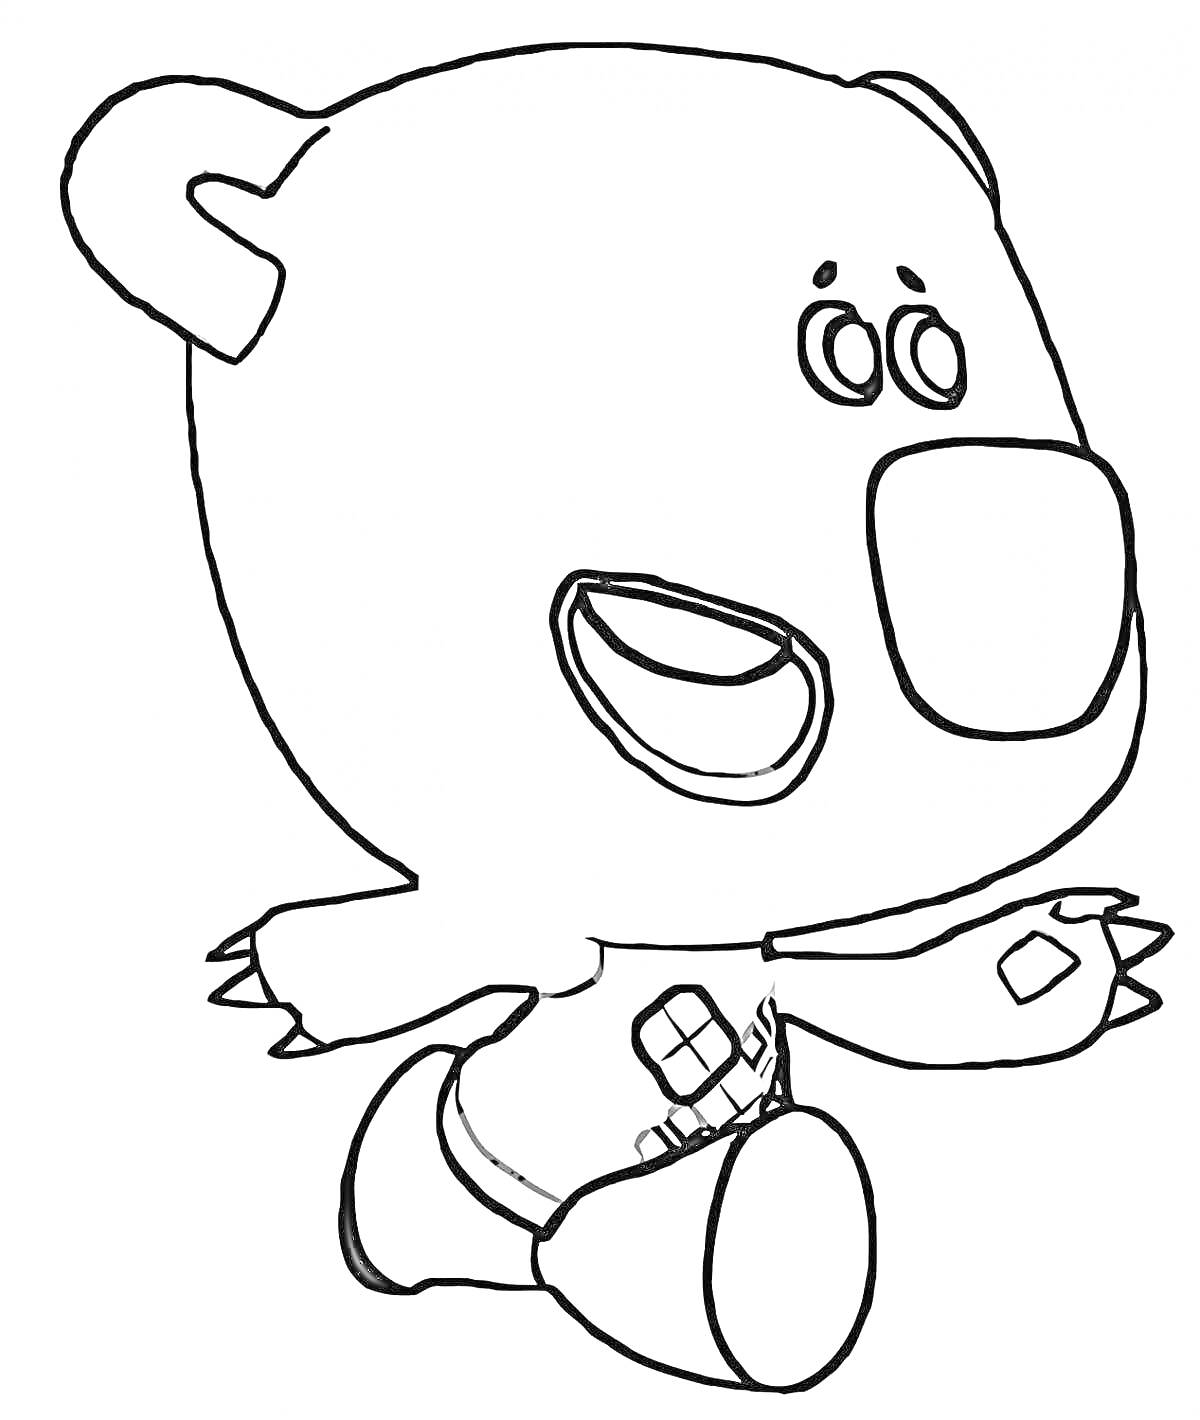 Раскраска Мишка из мультфильма с поясом и бинтом на лапе